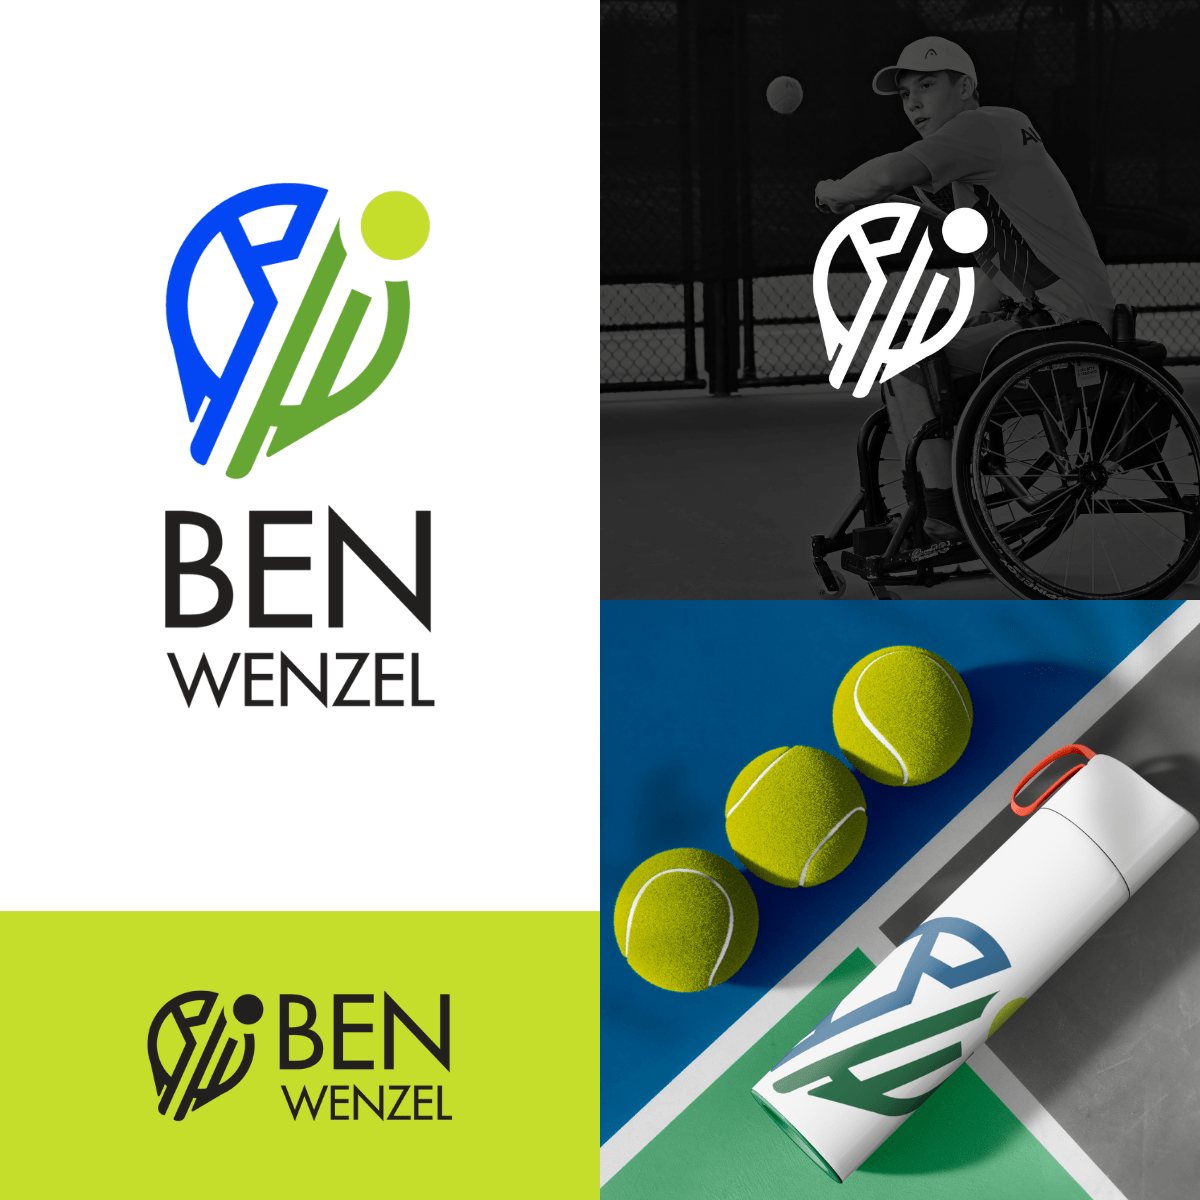 Ben Wenzel Branding